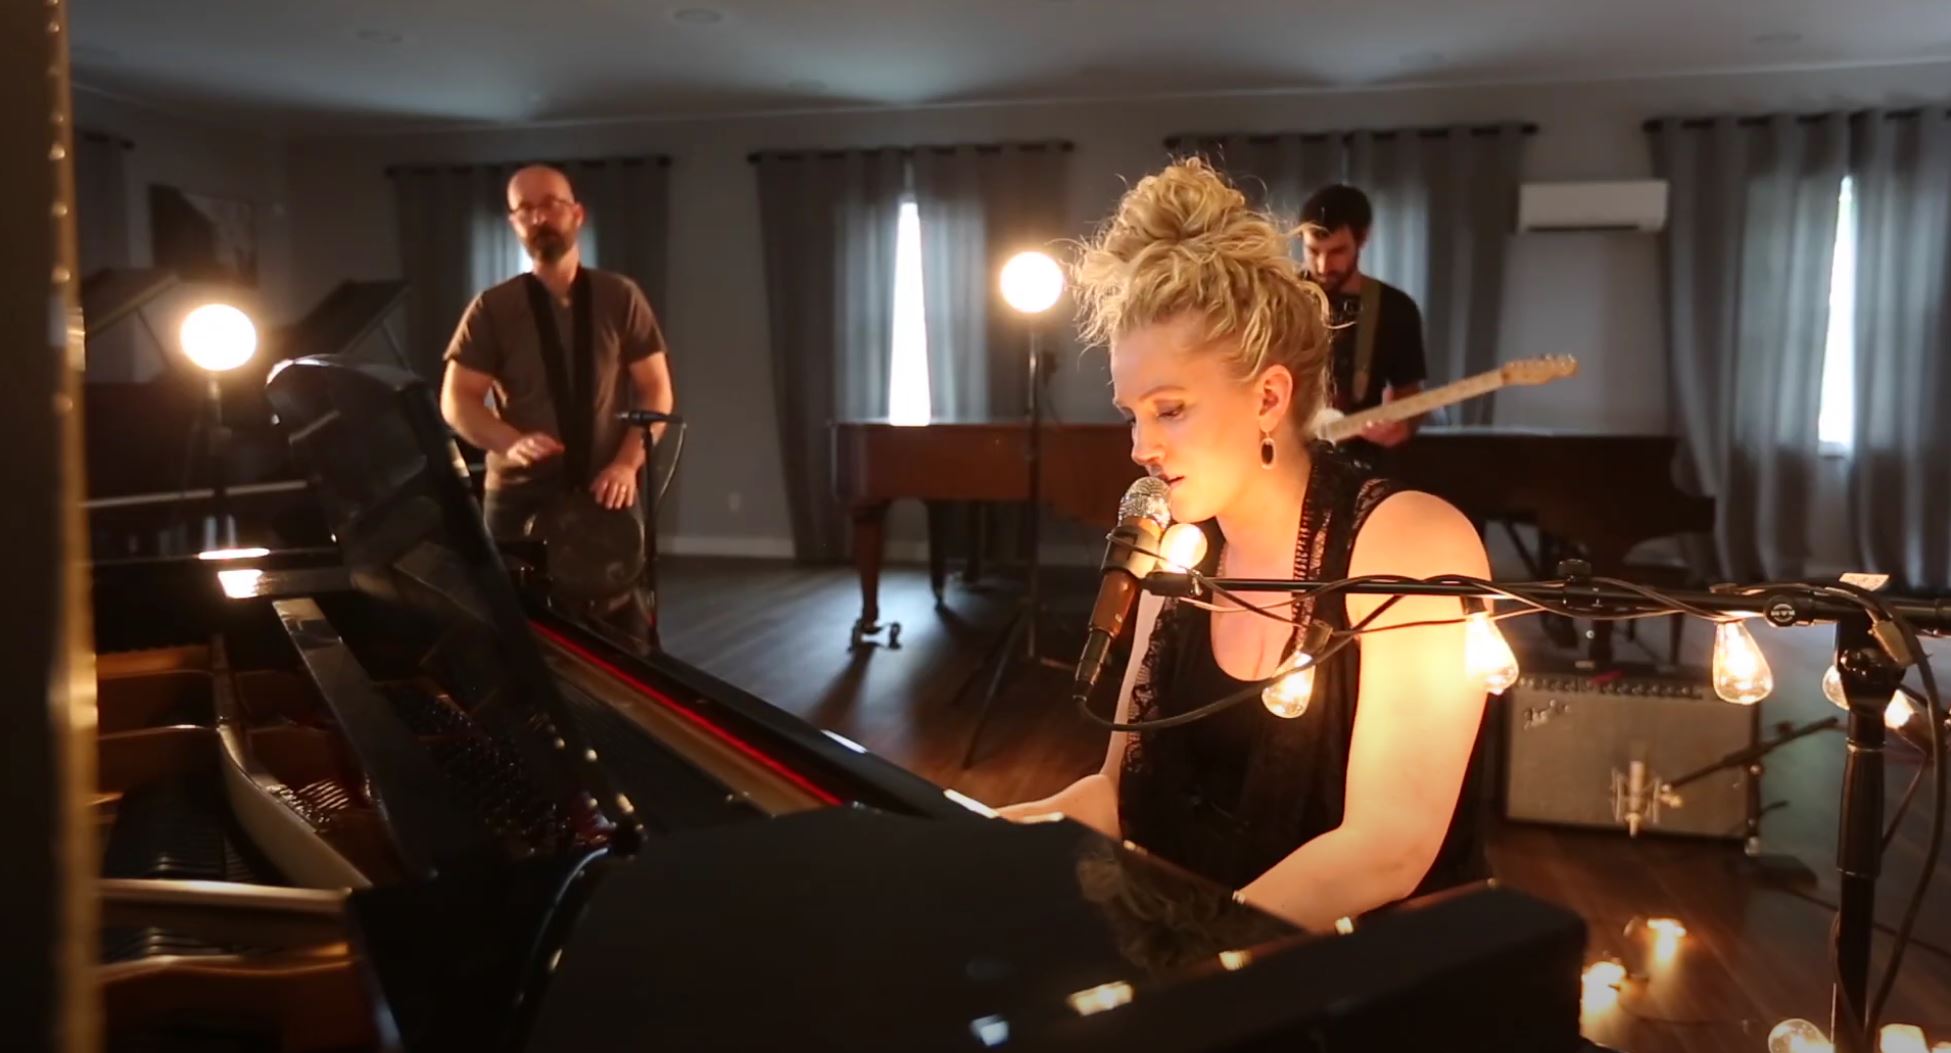 Abbie Thomas - Chupp's Piano Service Performance Video Shoot